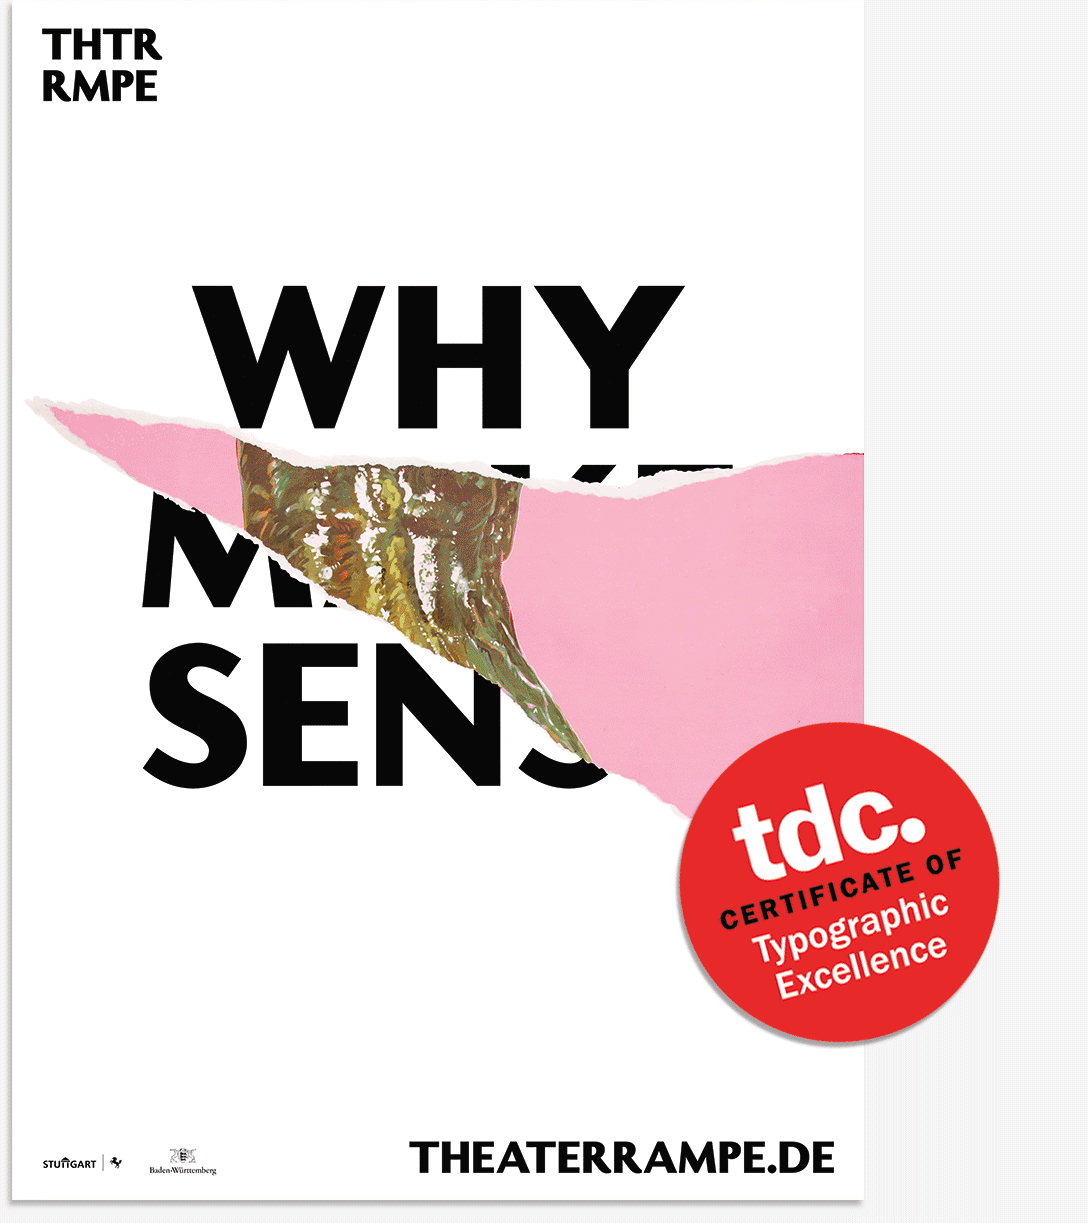 Why Make Sense Gurke Plakat Design für Theater Rampe gewinnt TDC Award - panorama studio für visuelle Gestaltung